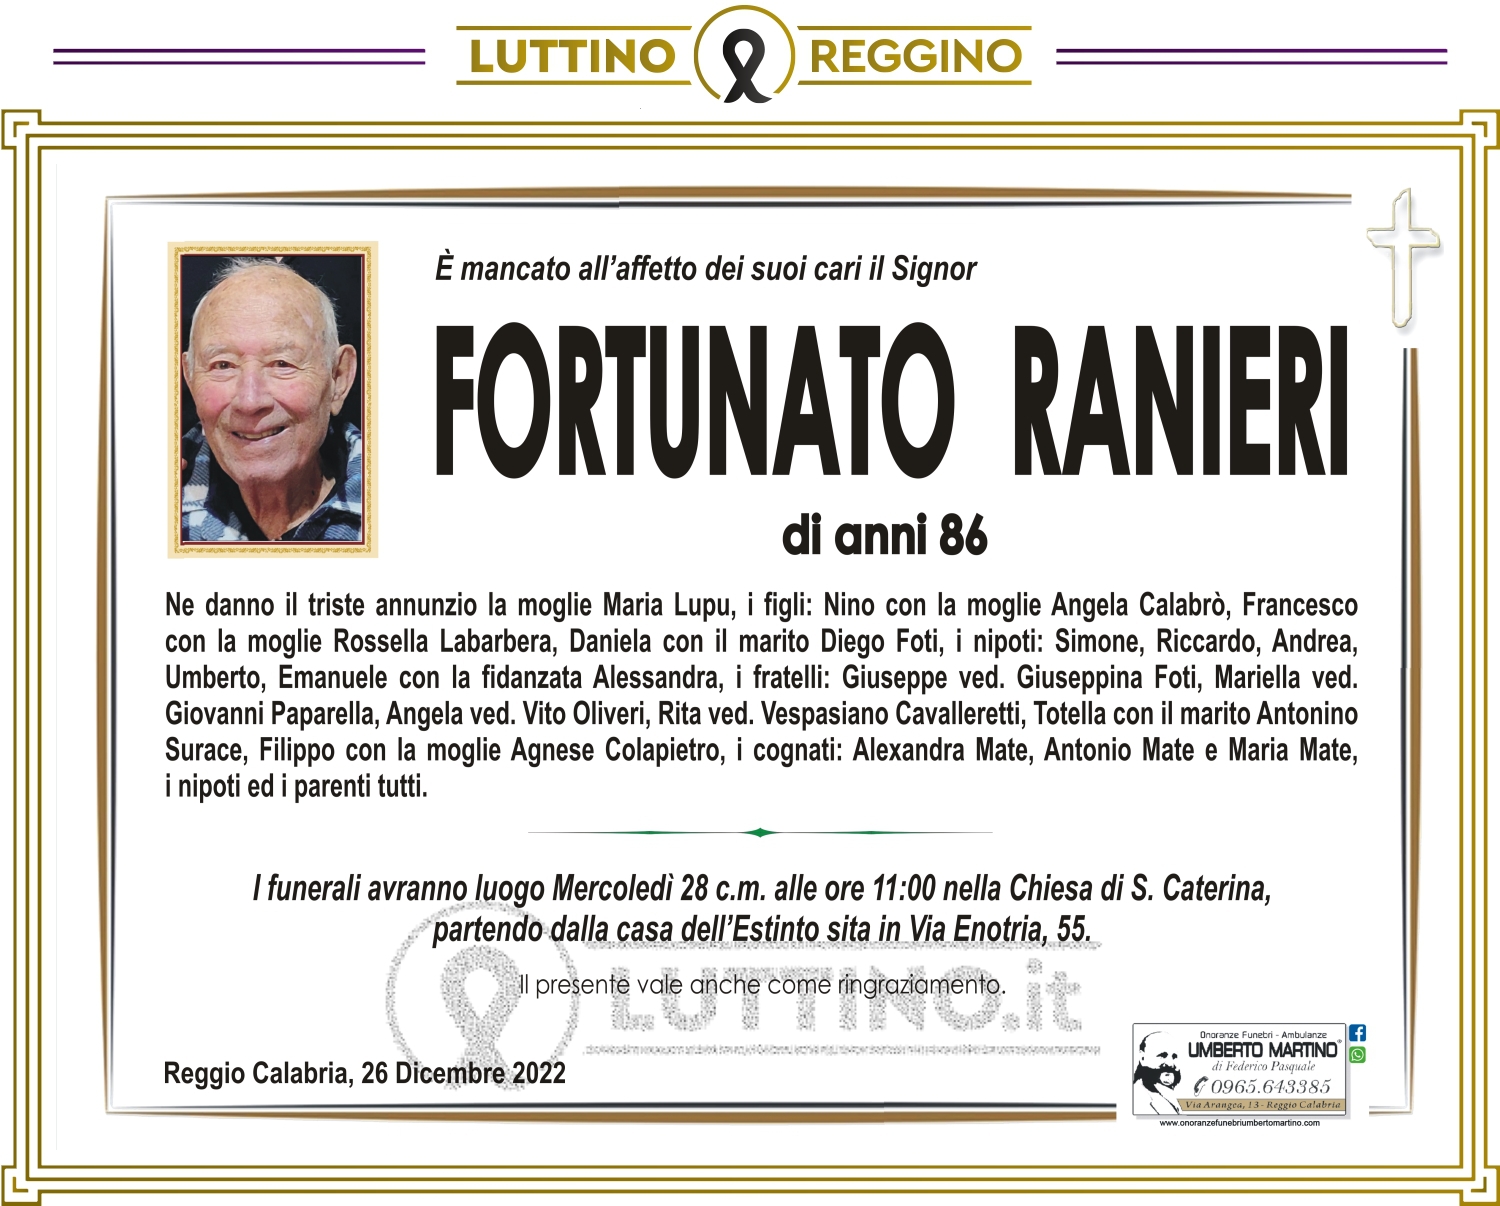 Fortunato Ranieri